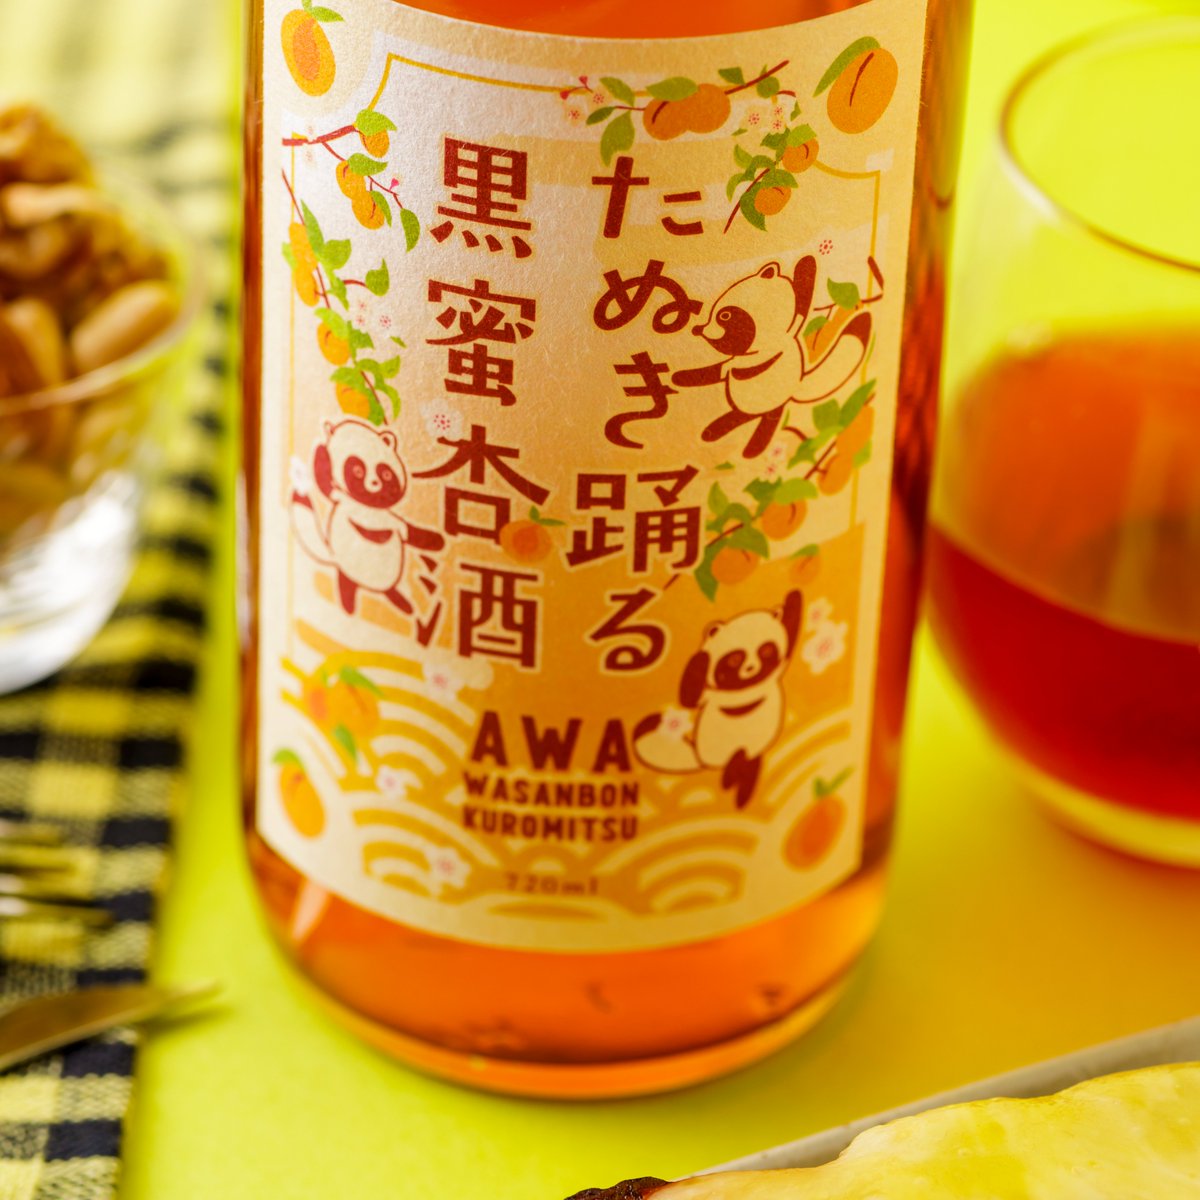 test ツイッターメディア - "和三盆糖黒蜜" のとろ～りとしたコクに、完熟した杏のリッチなおいしさが濃密に絡む杏酒『たぬき踊る黒蜜杏酒』
➤https://t.co/56BwYn3BtK https://t.co/69KmxfDjsU